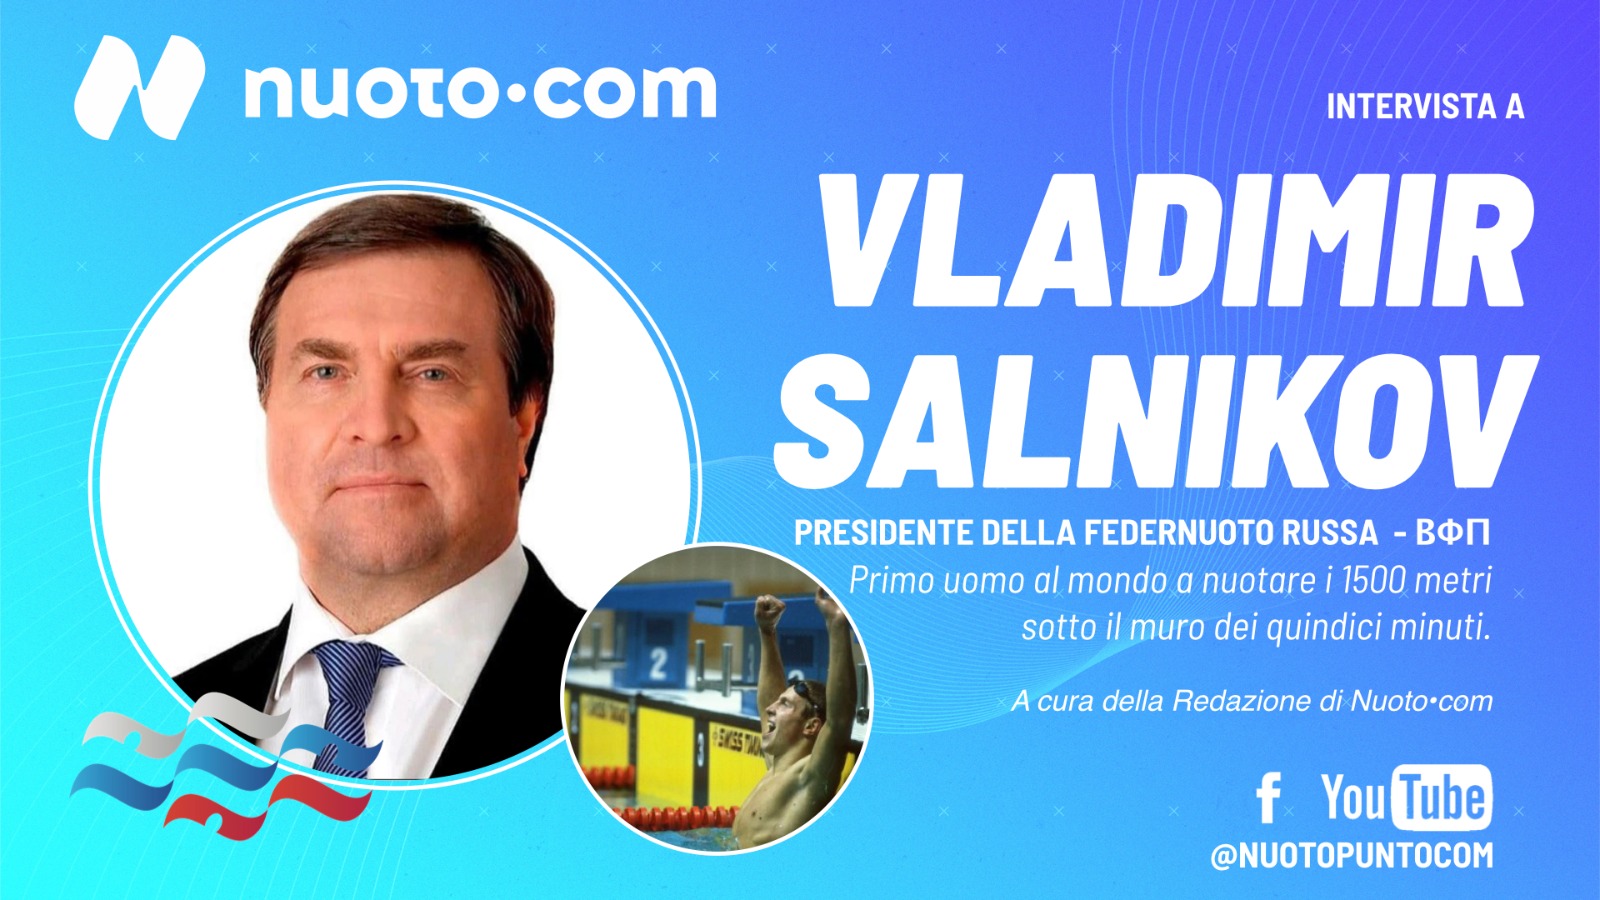 Scopri di più sull'articolo In arrivo l’intervista video a Vladimir Salnikov